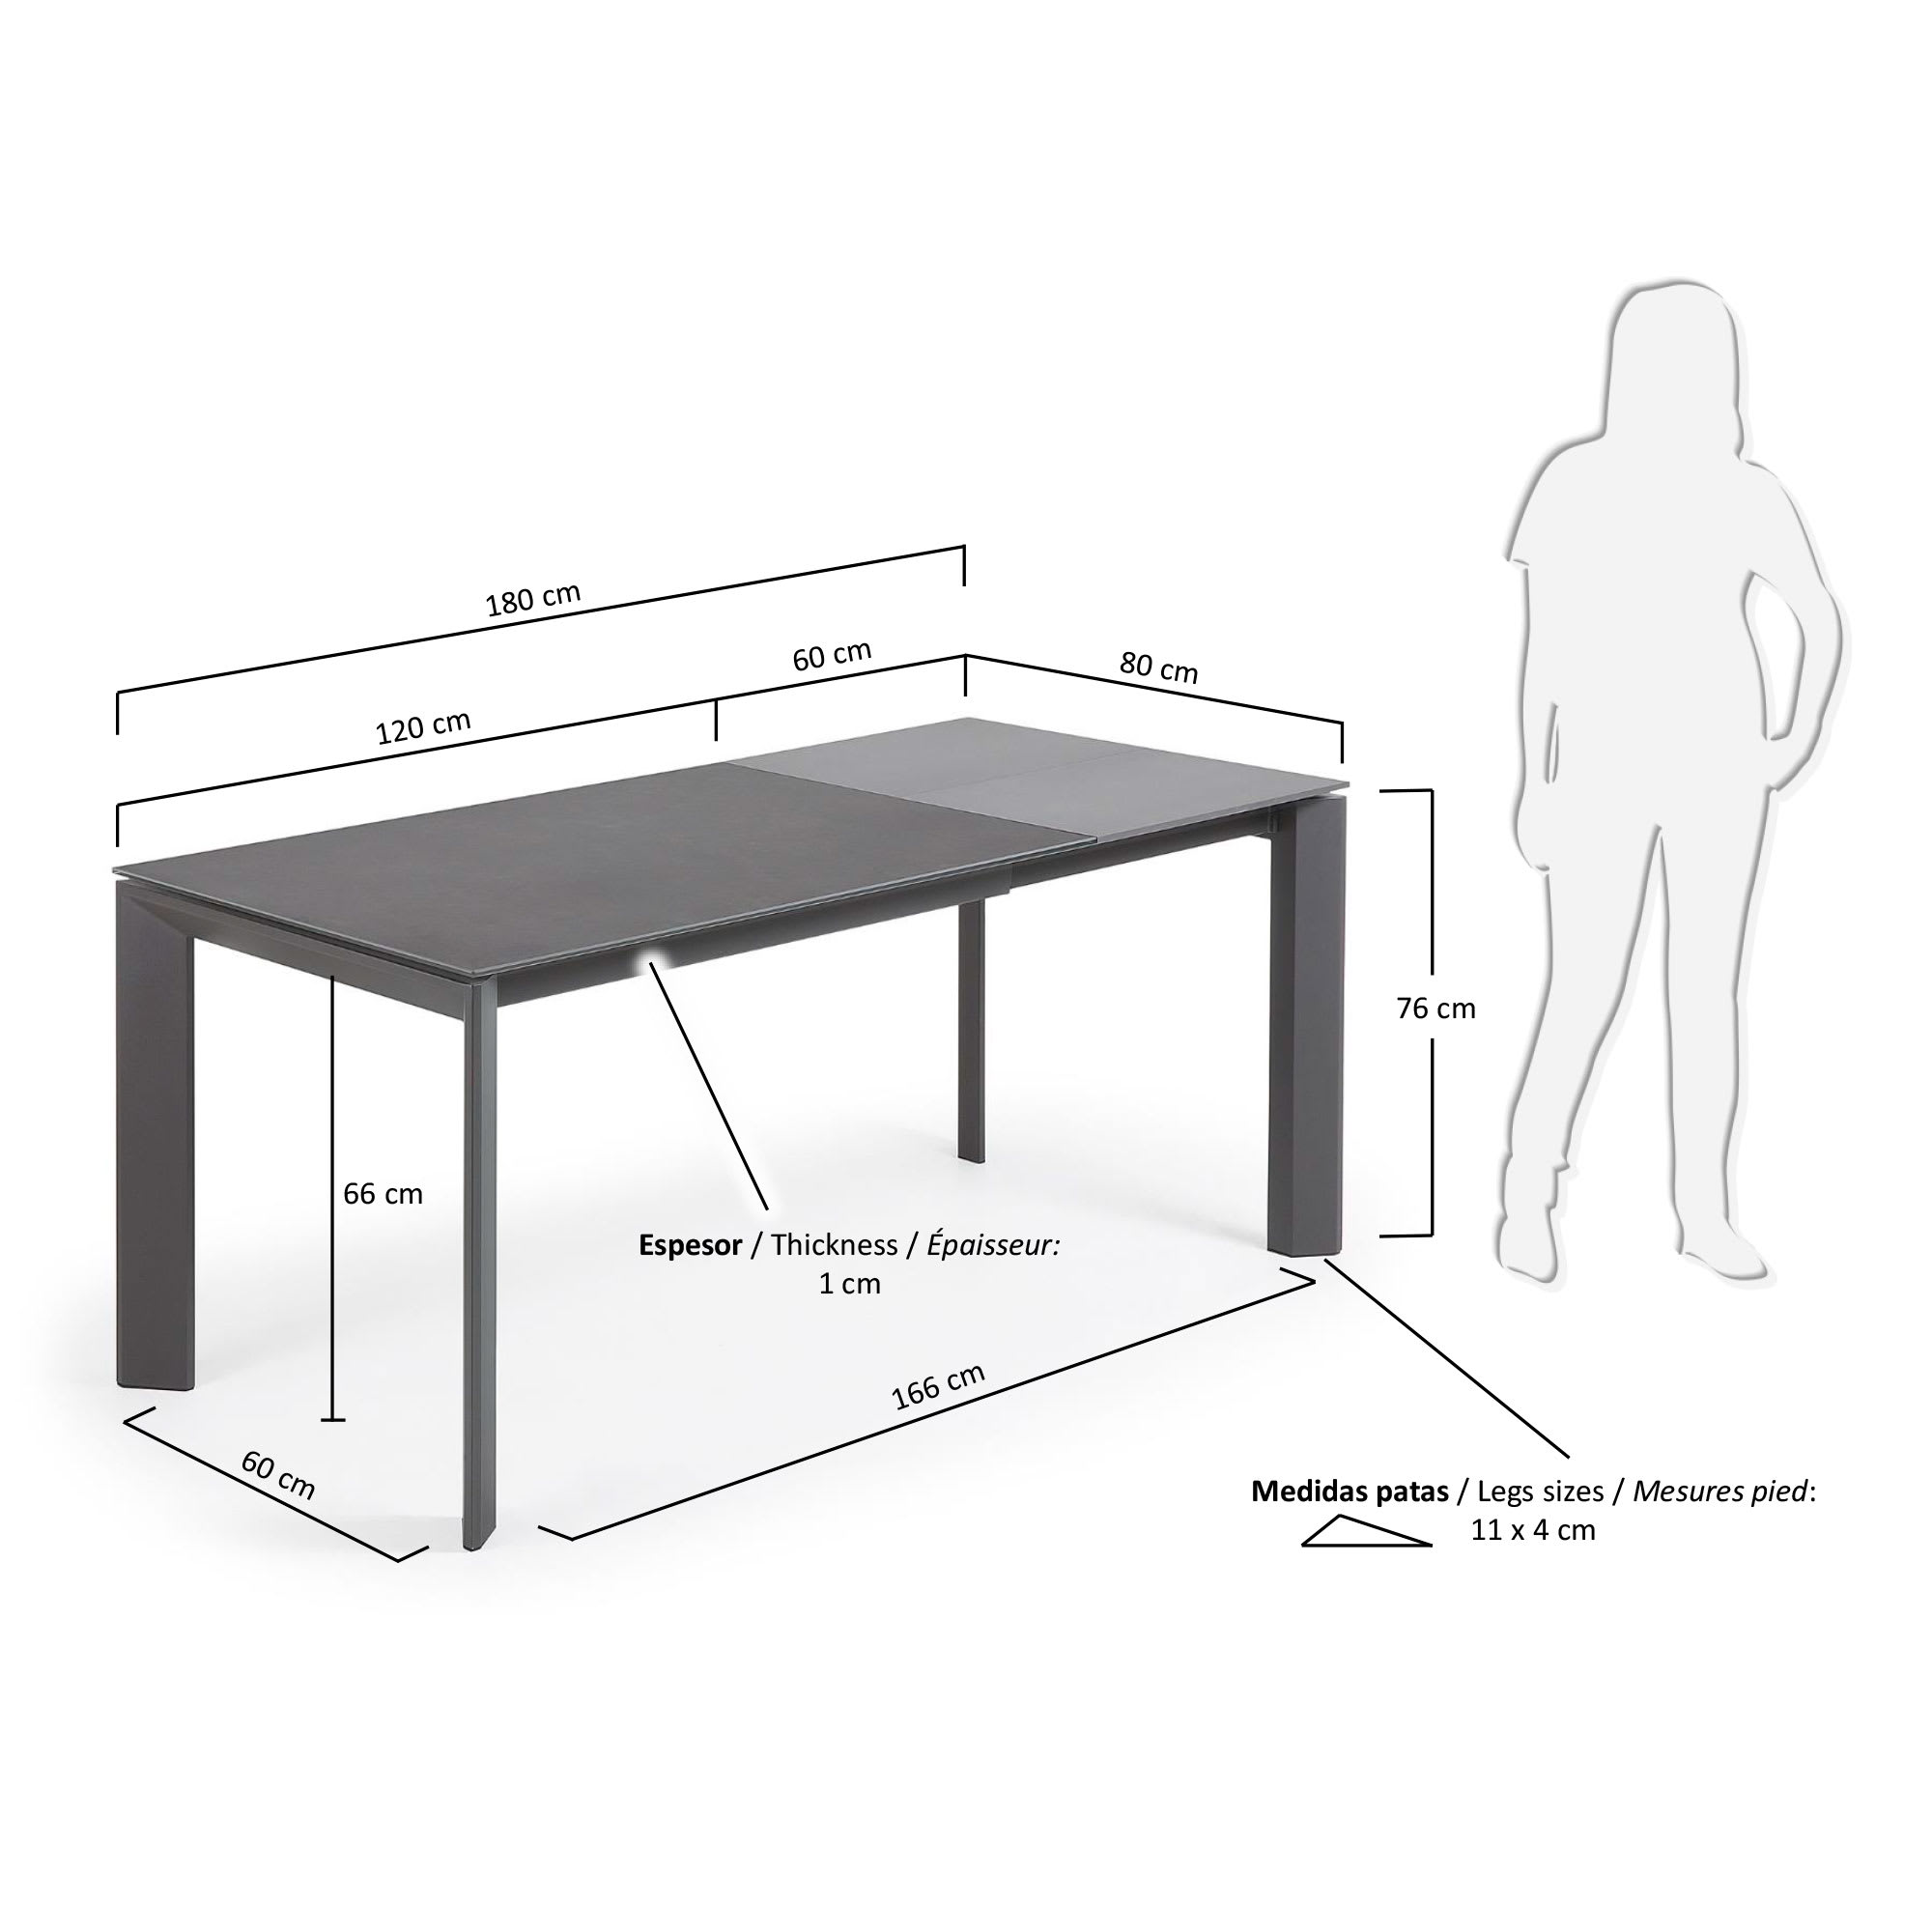 엑시스 세라믹 확장형 테이블 VR(80 x 120-180cm) - 크기